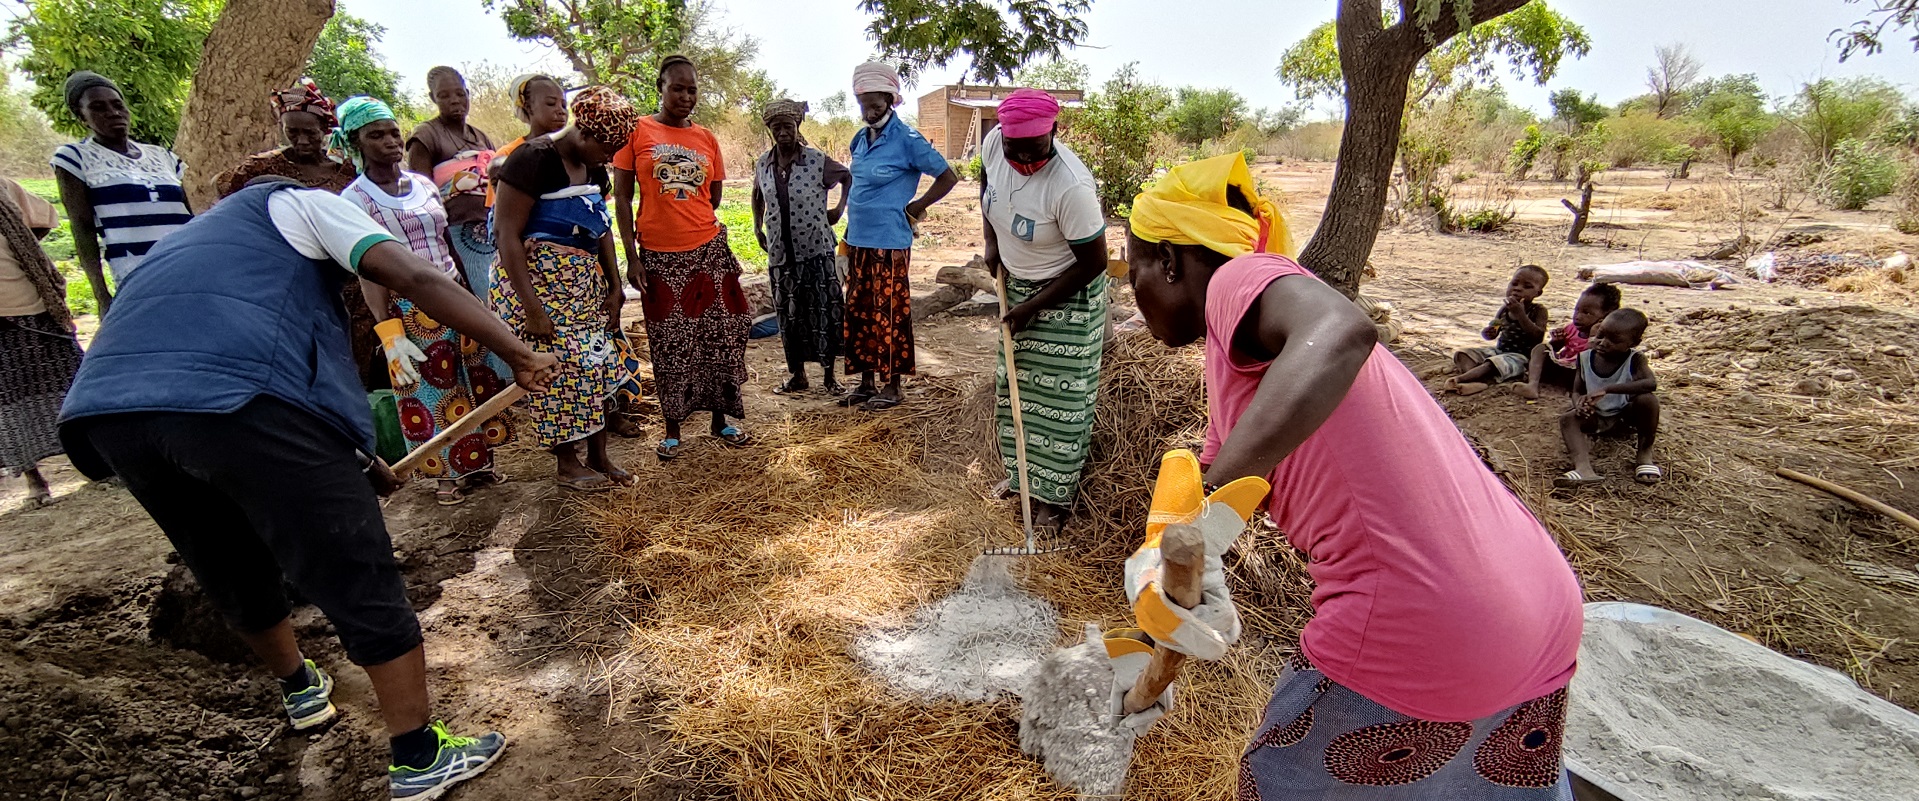 Alcune donne intente nella creazione di biocompost